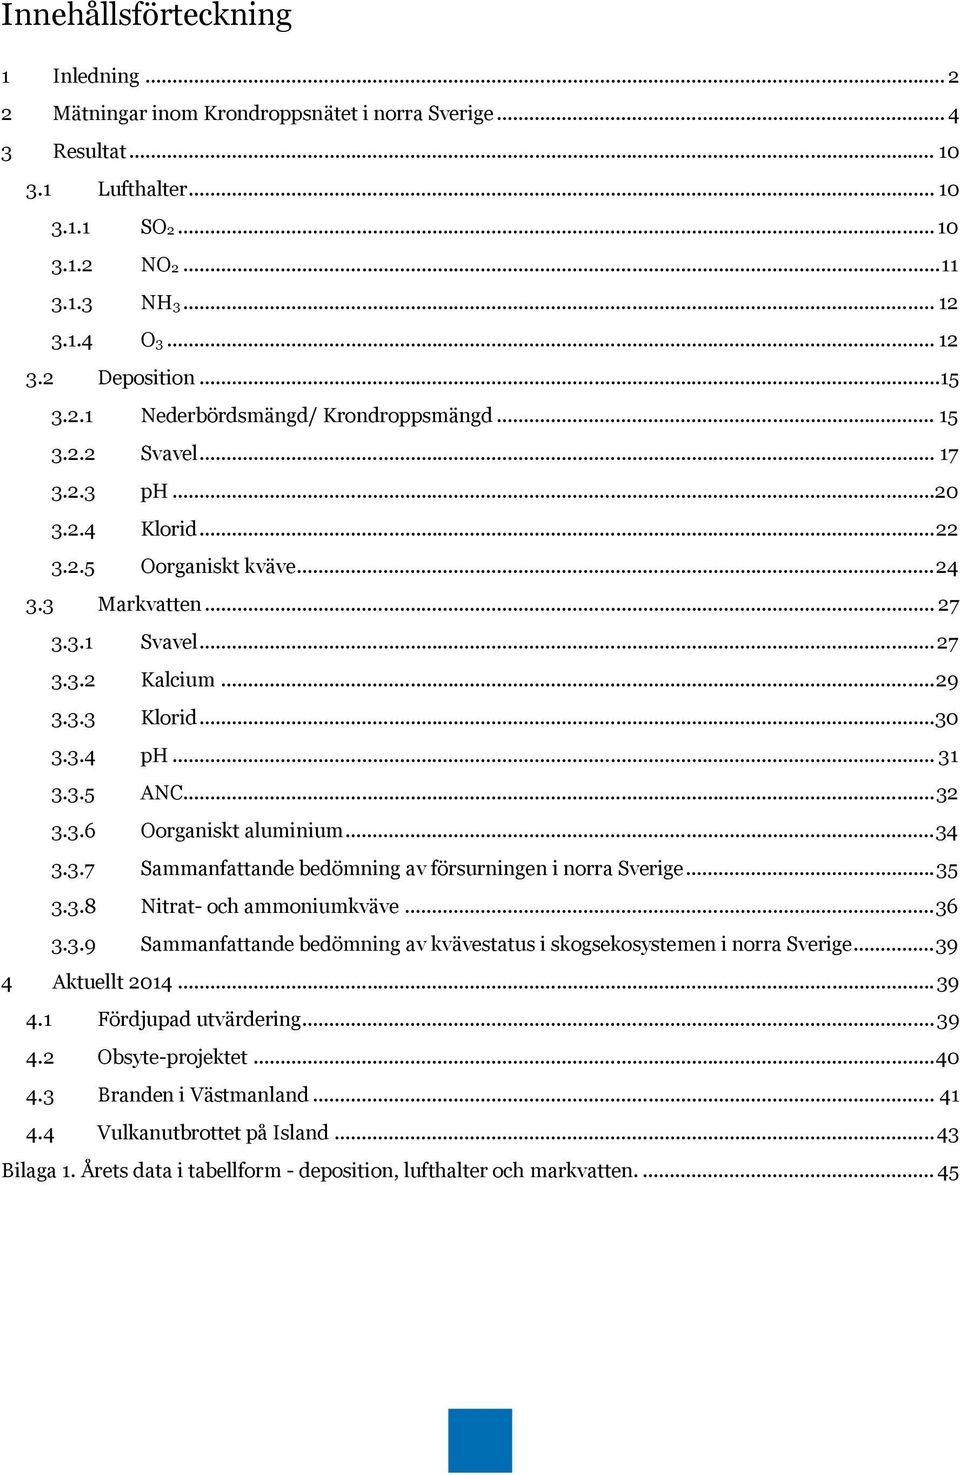 .. 3 3.3.8 Nitrat- och ammoniumkväve... 3 3.3.9 Sammanfattande bedömning av kvävestatus i skogsekosystemen i norra Sverige... 39 Aktuellt... 39. Fördjupad utvärdering... 39. Obsyte-projektet.